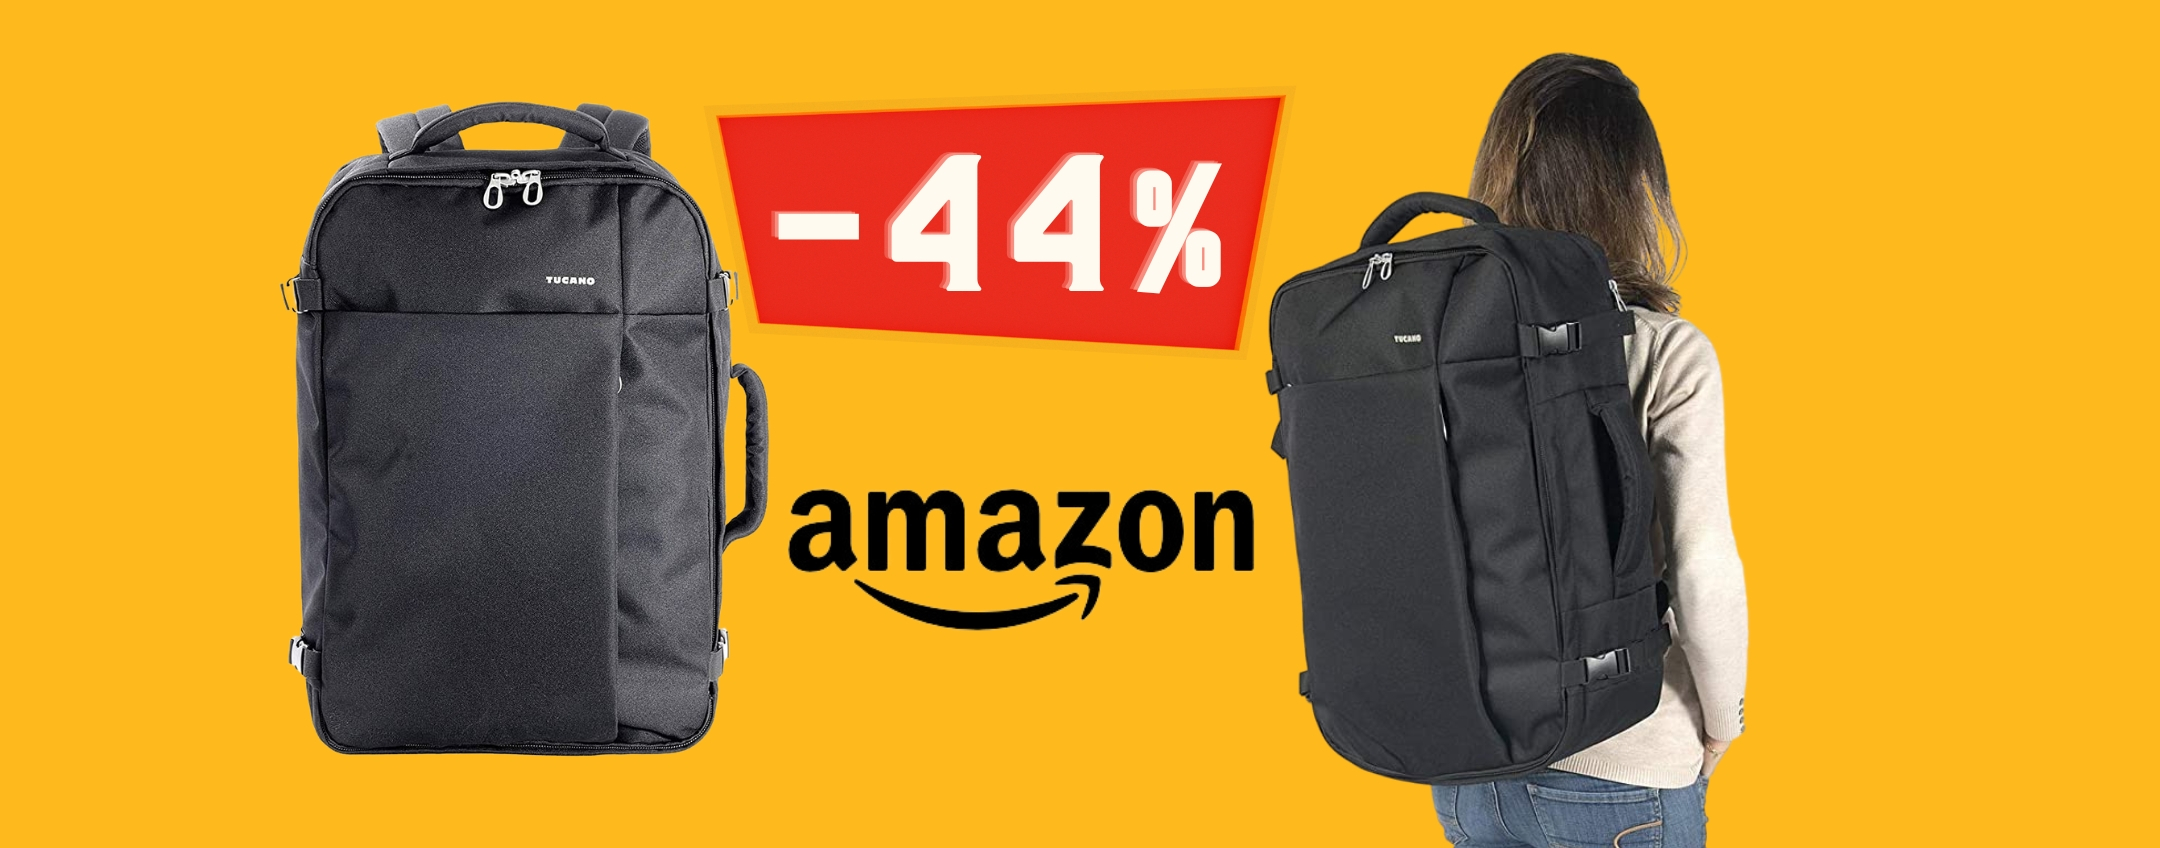 Lo zaino perfetto per i tuoi viaggi è su Amazon SCONTATISSIMO (-44%)